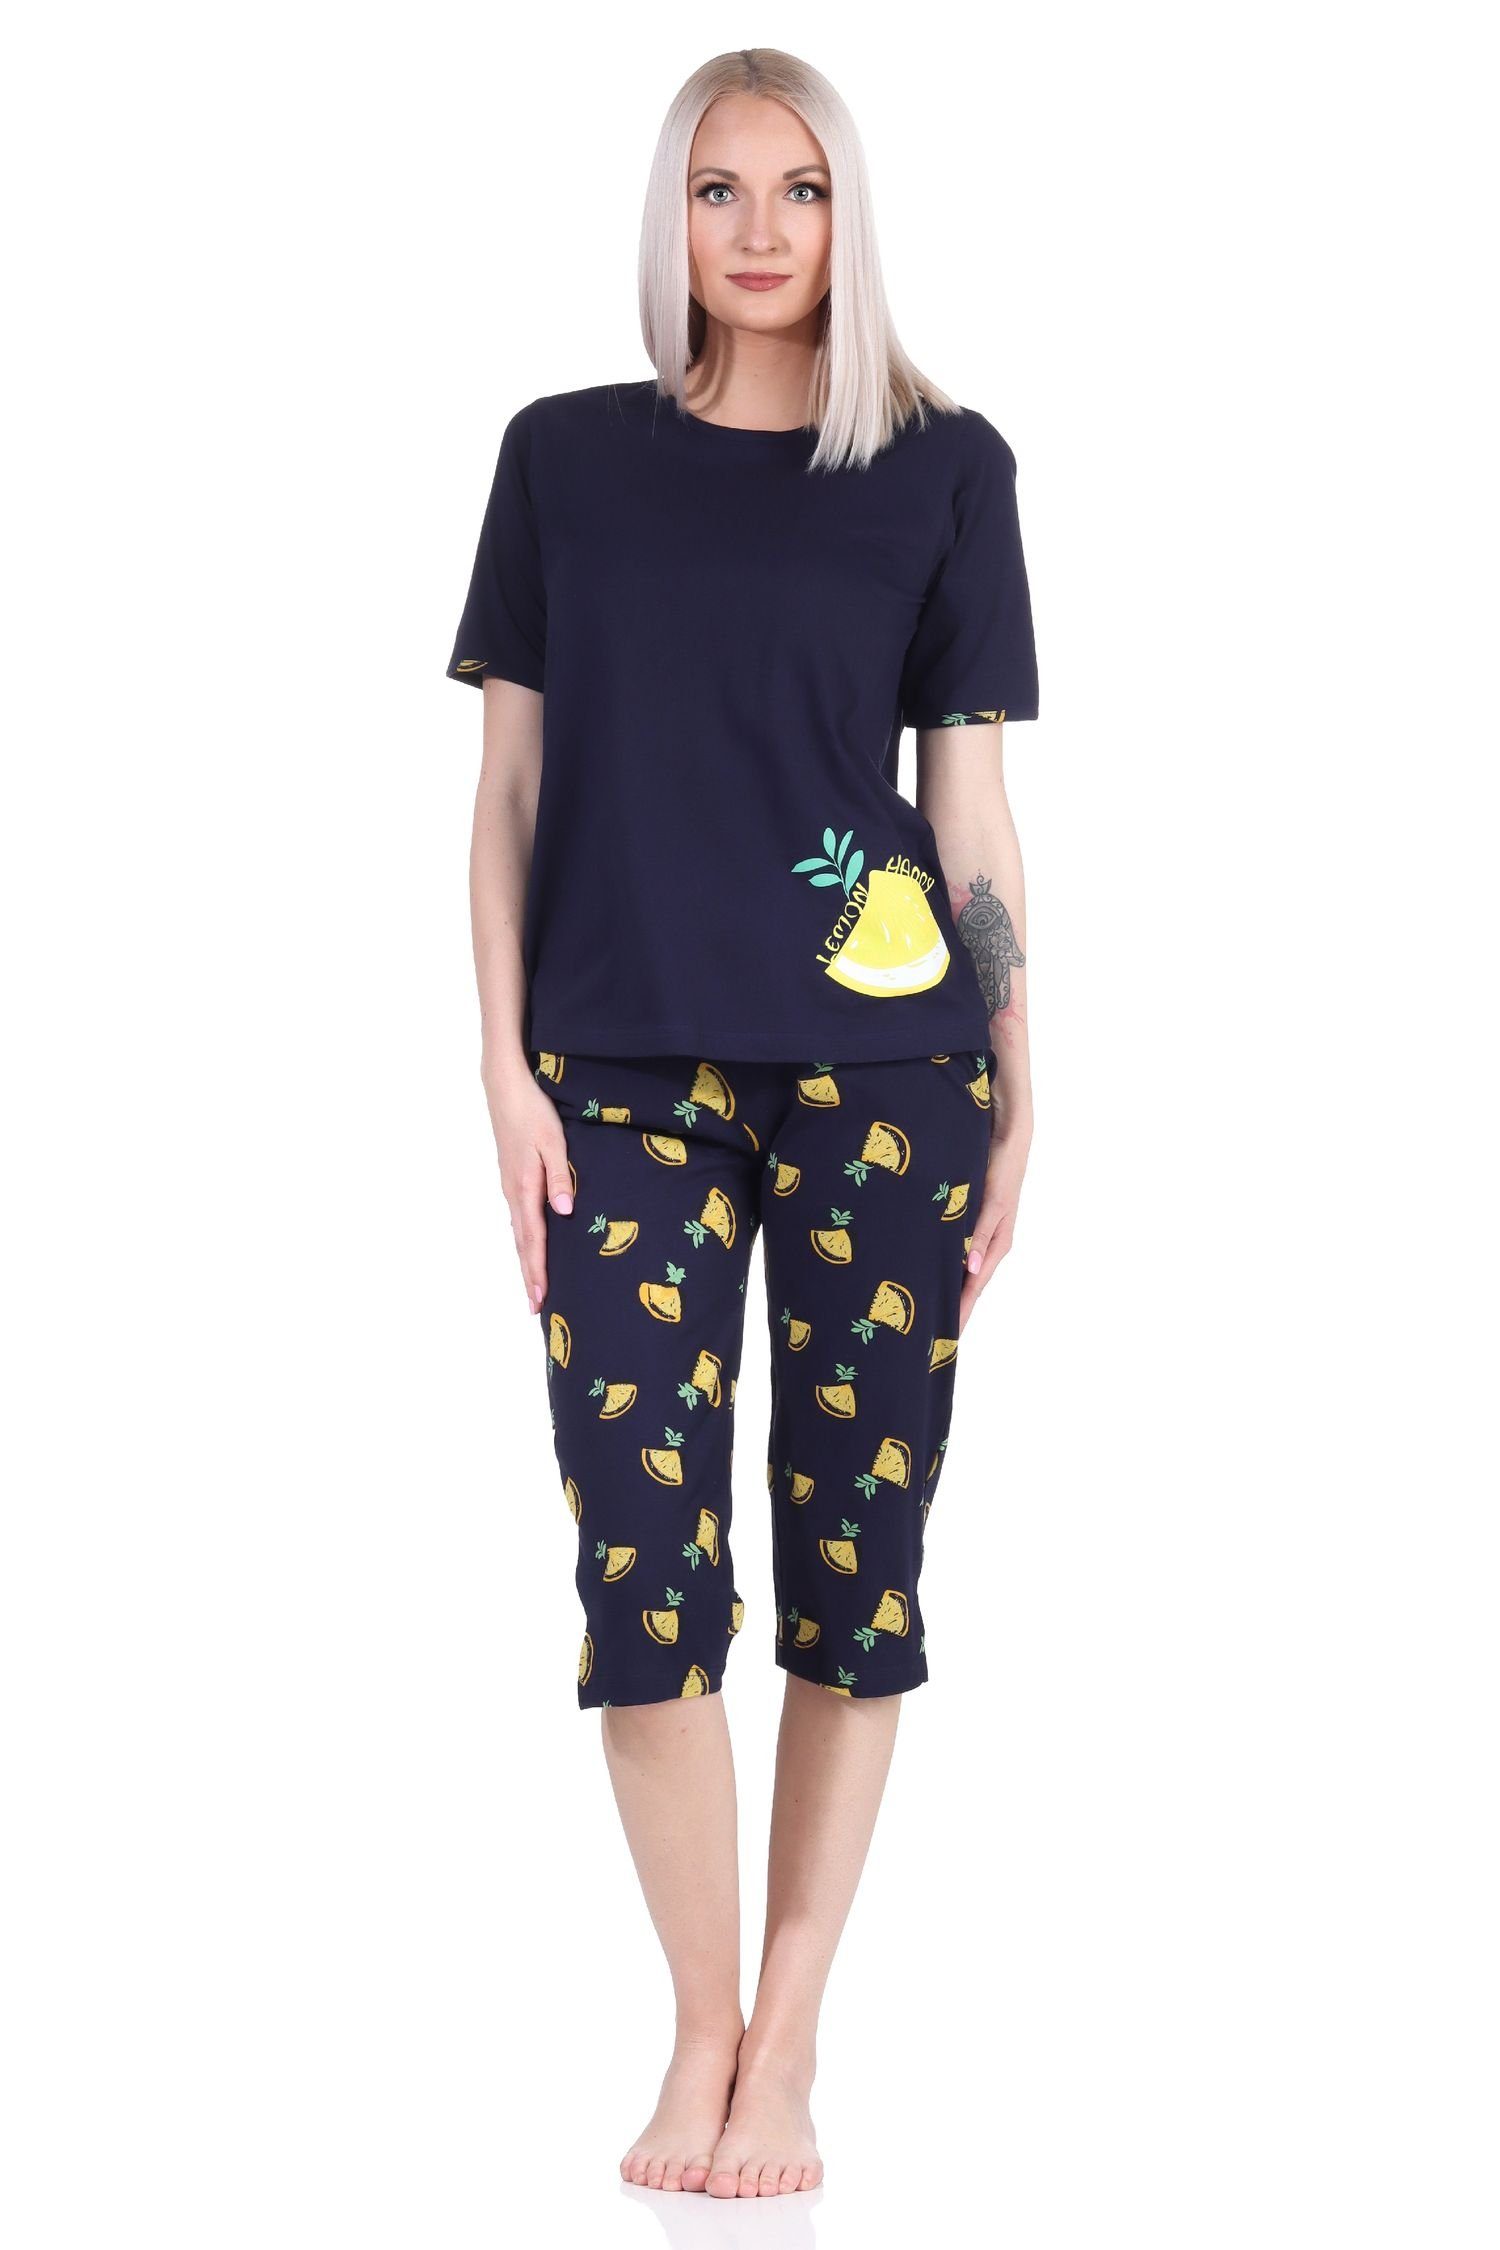 Normann Pyjama Süsser Damen kurzarm Capri Schlafanzug mit Zitronen als Motiv marine